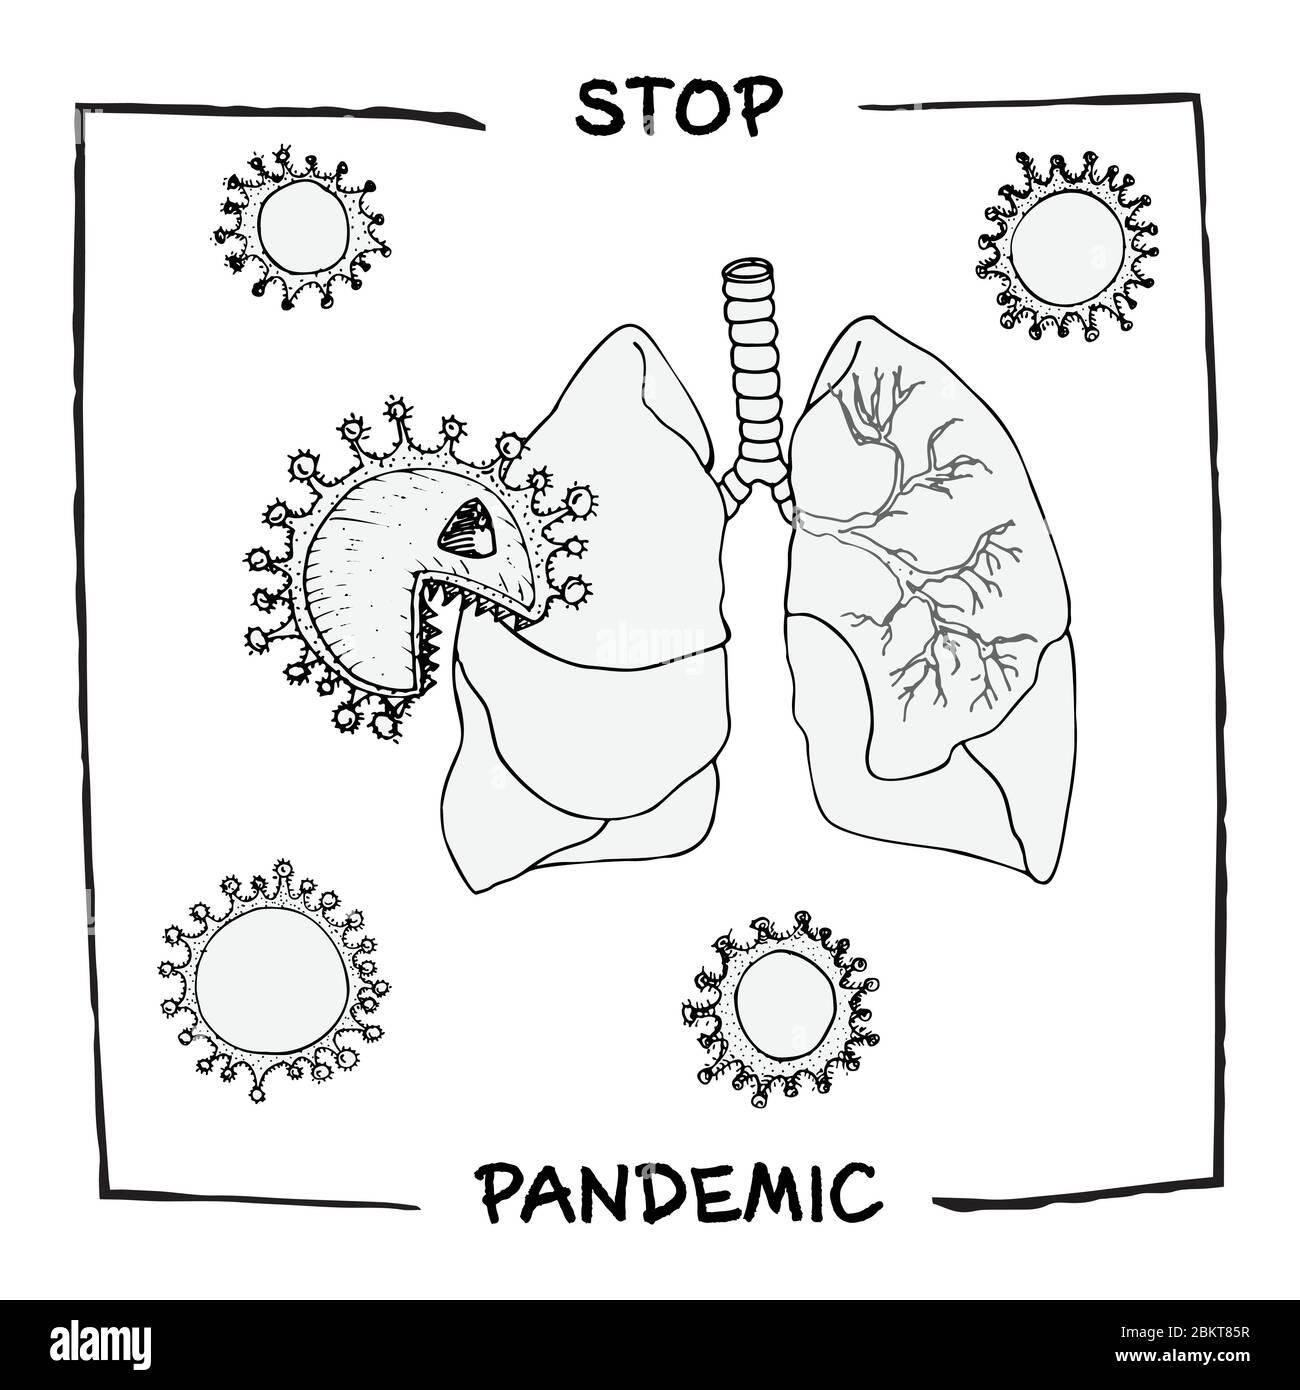 Conception concept de médical, social, information affiche d'agitation contre l'épidémie de coronavirus avec le texte Stop panic style esquisse Illustration de Vecteur